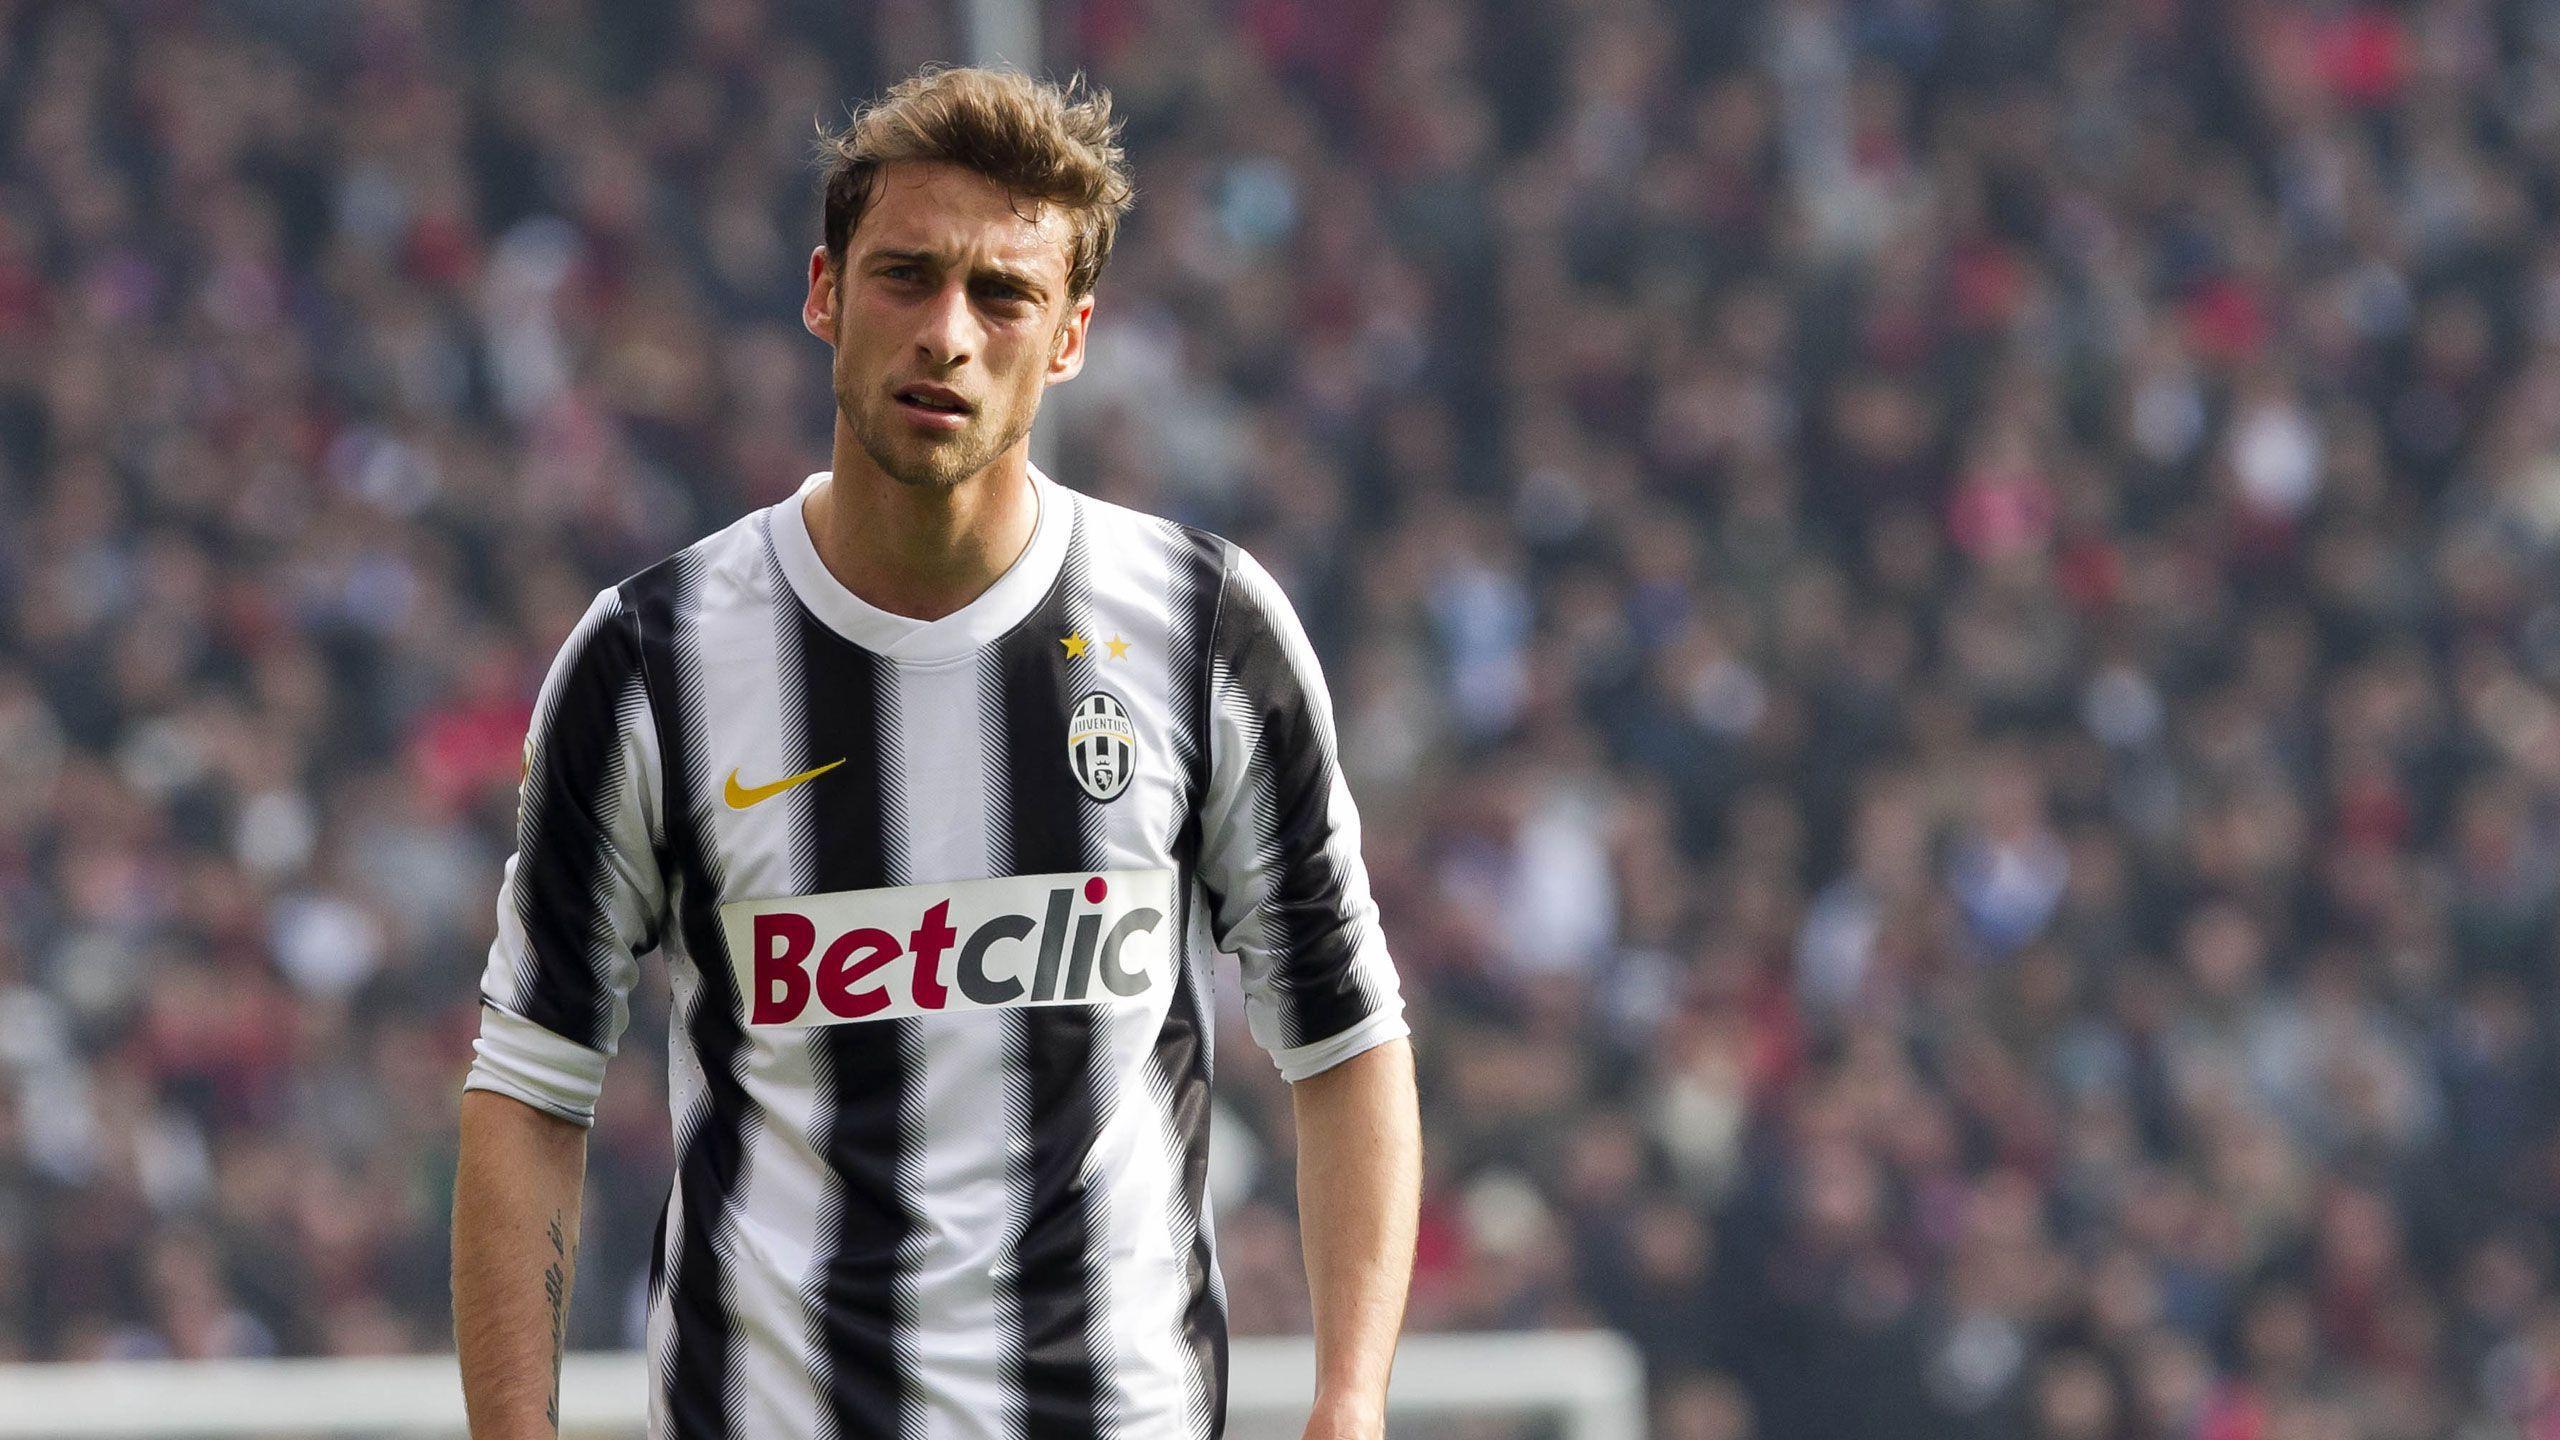 Juventus Claudio Marchisio 2560x1440 #juventus